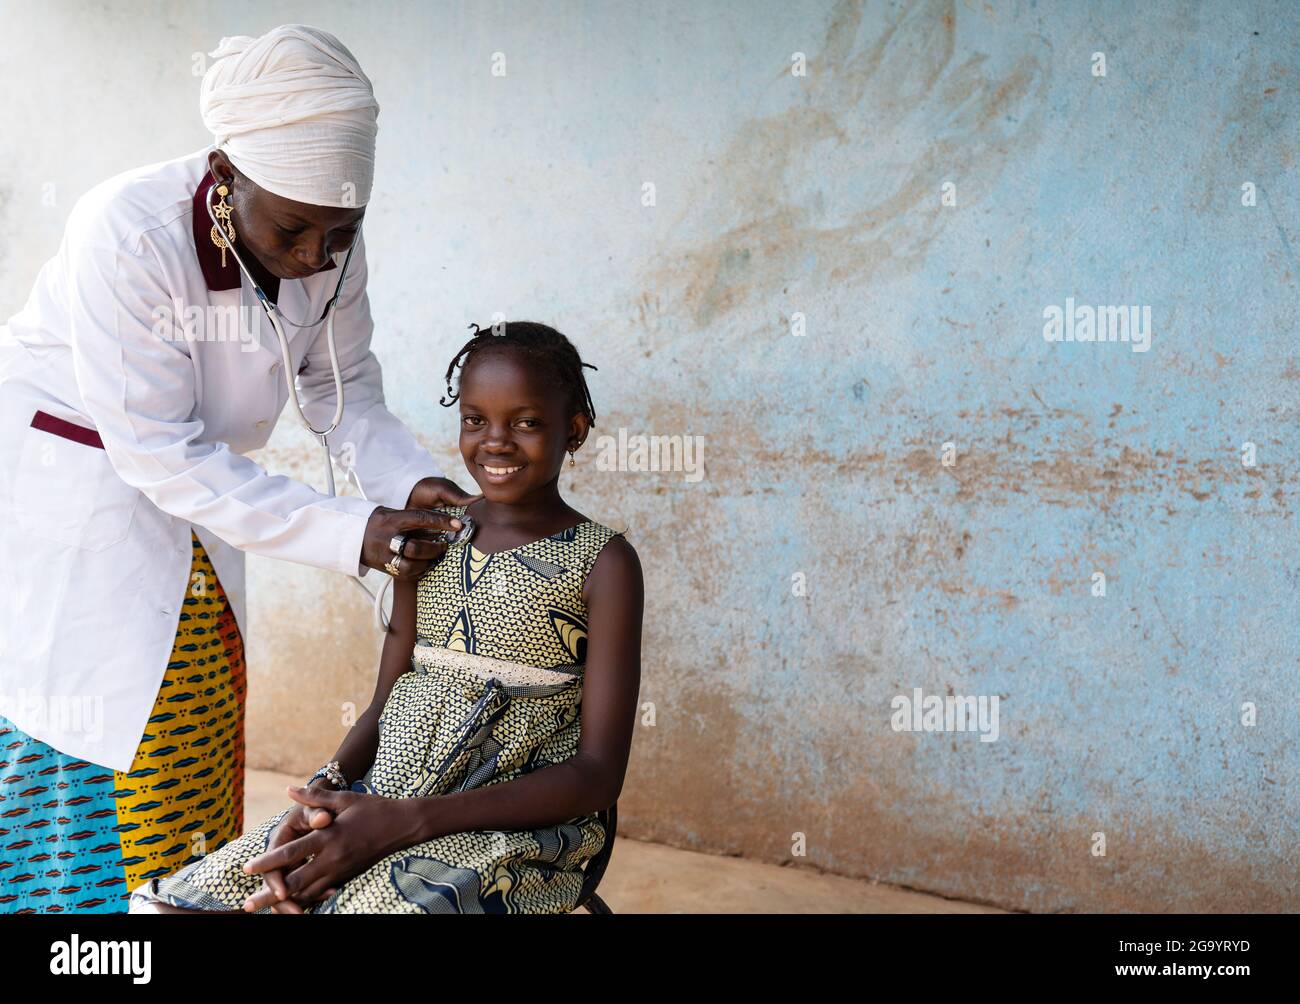 In questa immagine, un pediatra nero con un vestito da medico sta mettendo uno stetoscopio sul petto di una bambina sorridente con tipiche trecce africane du Foto Stock